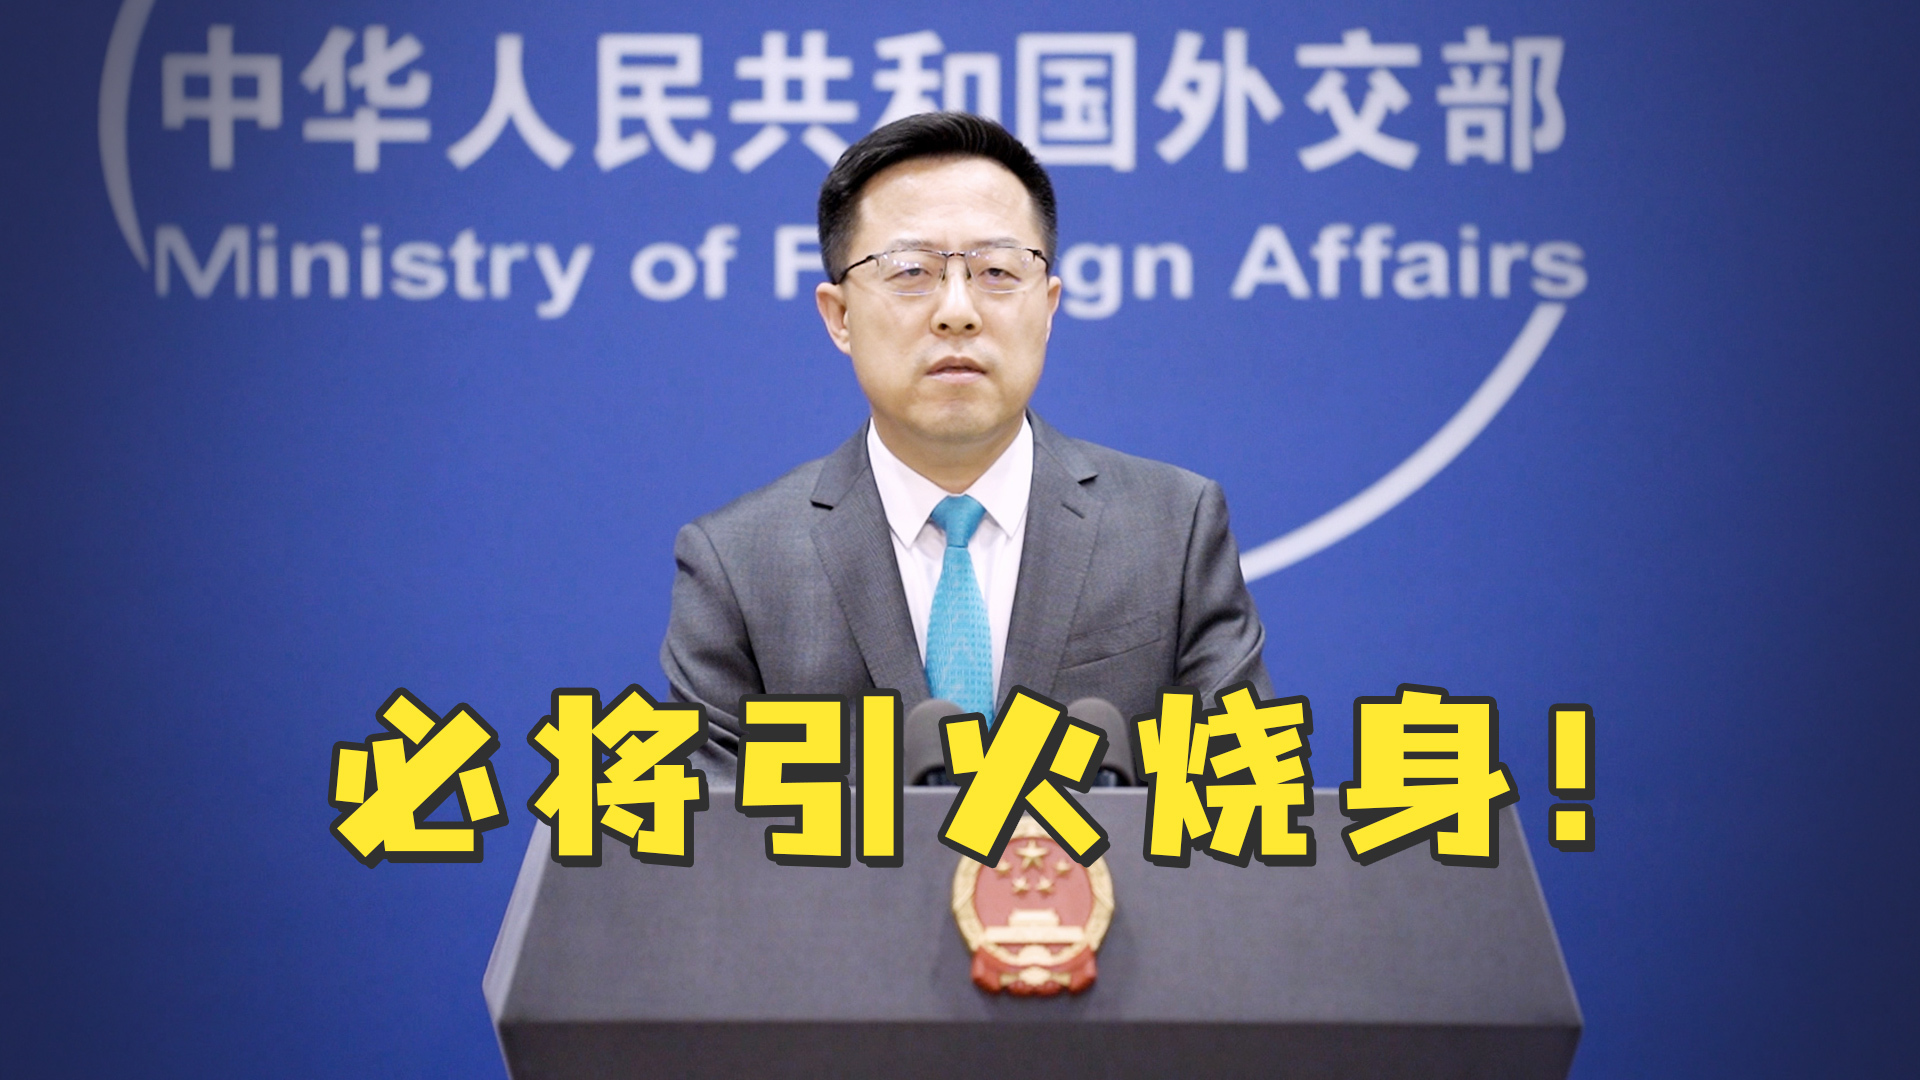 美官方文件删除不支持台湾独立等表述,赵立坚:必将引火烧身